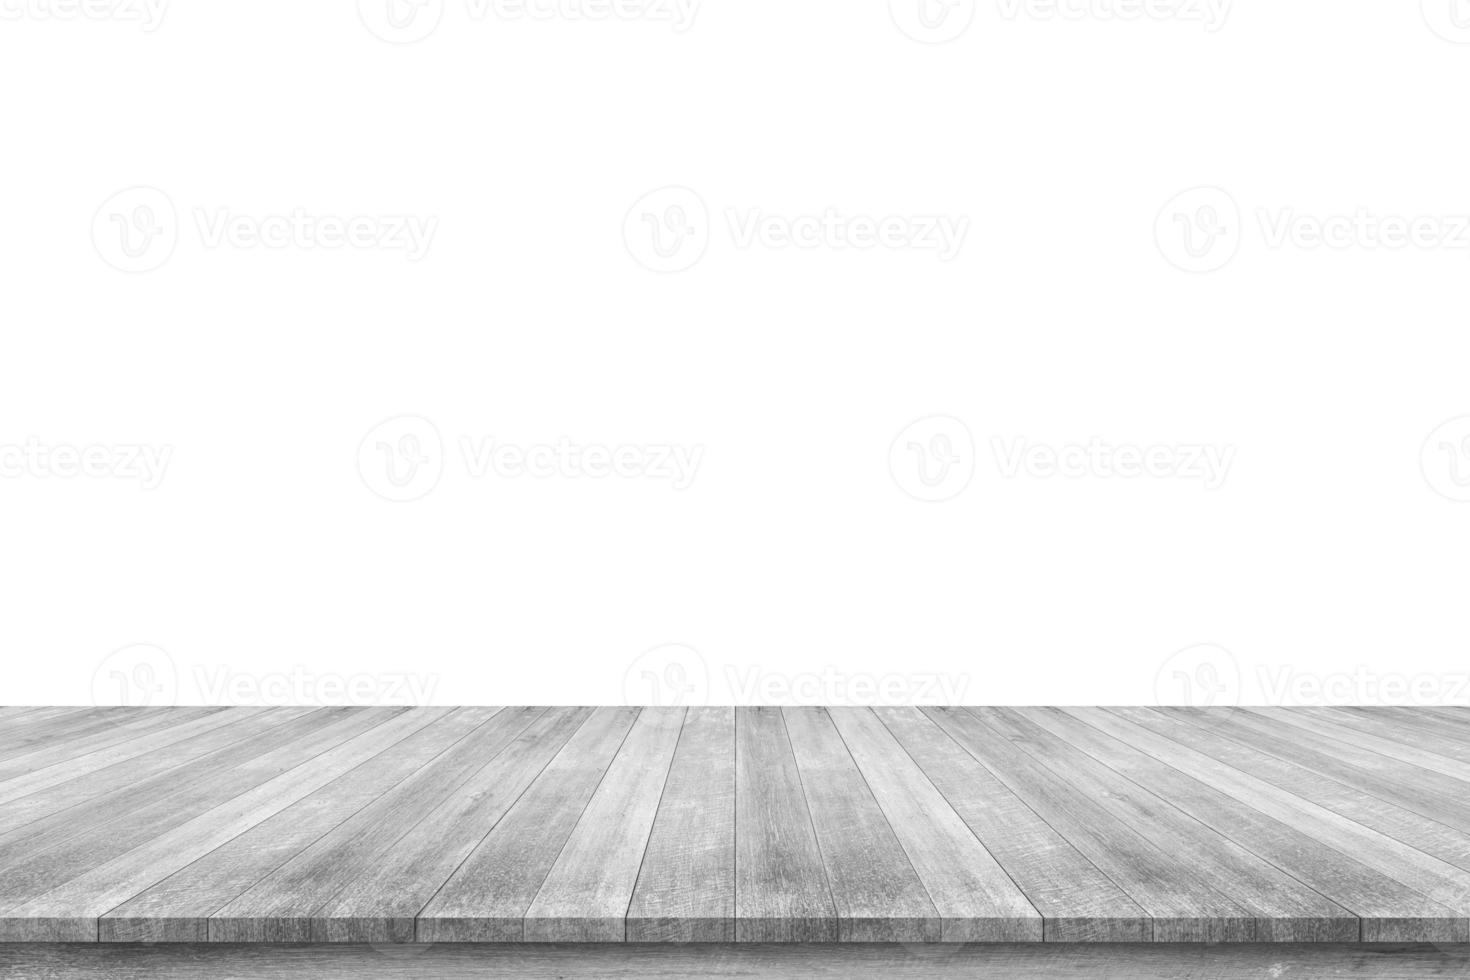 Mesa de madera blanca vacía aislada sobre fondo blanco foto